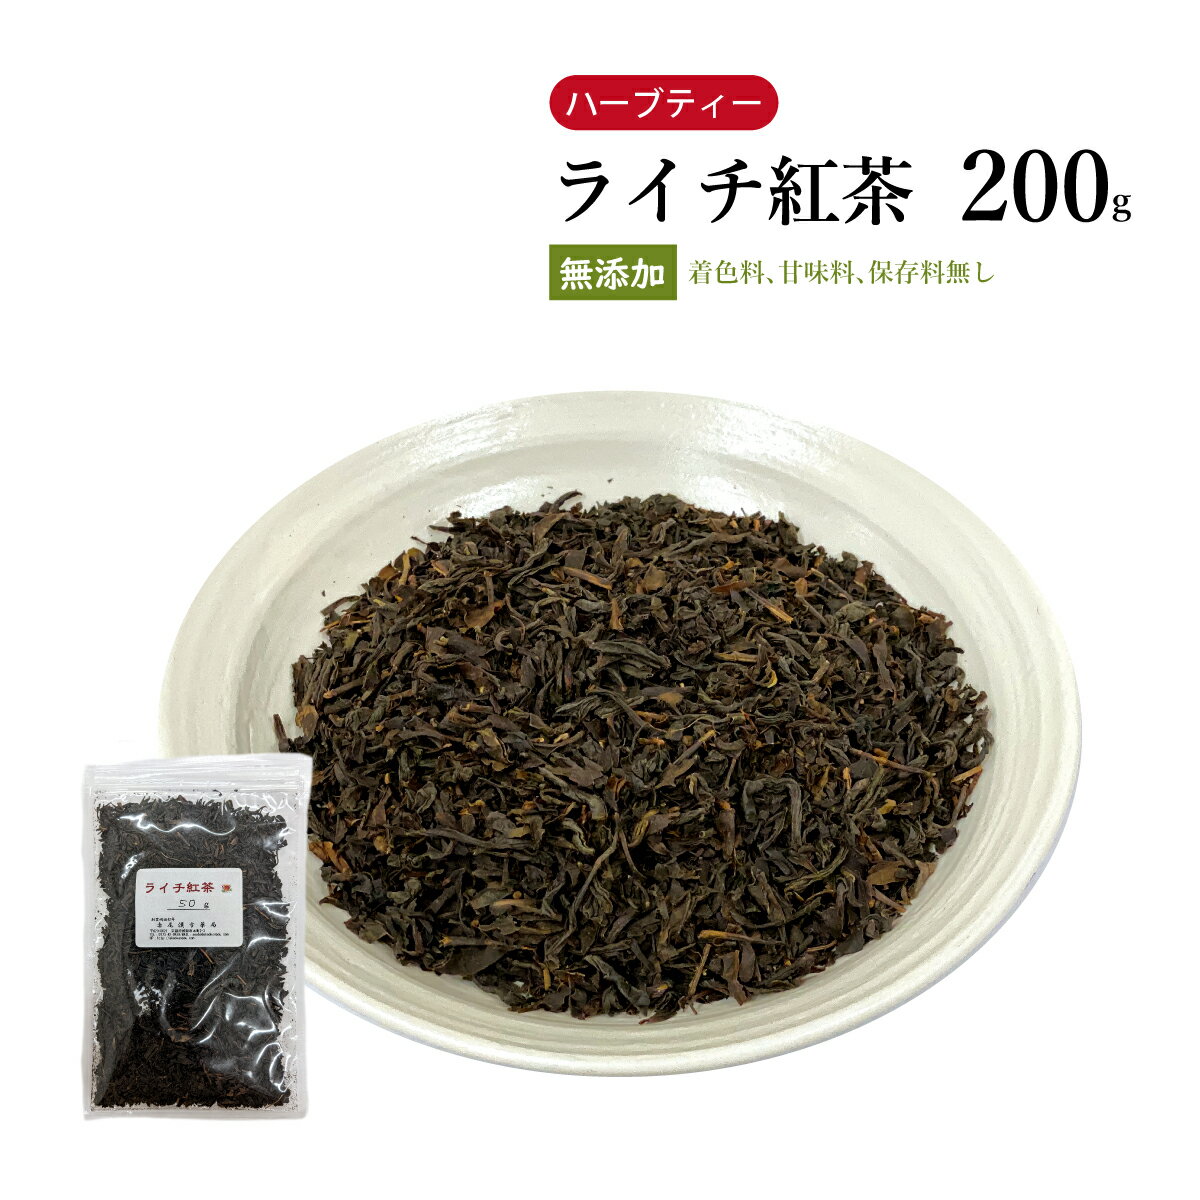 ライチ紅茶200g【メール便送料無料】